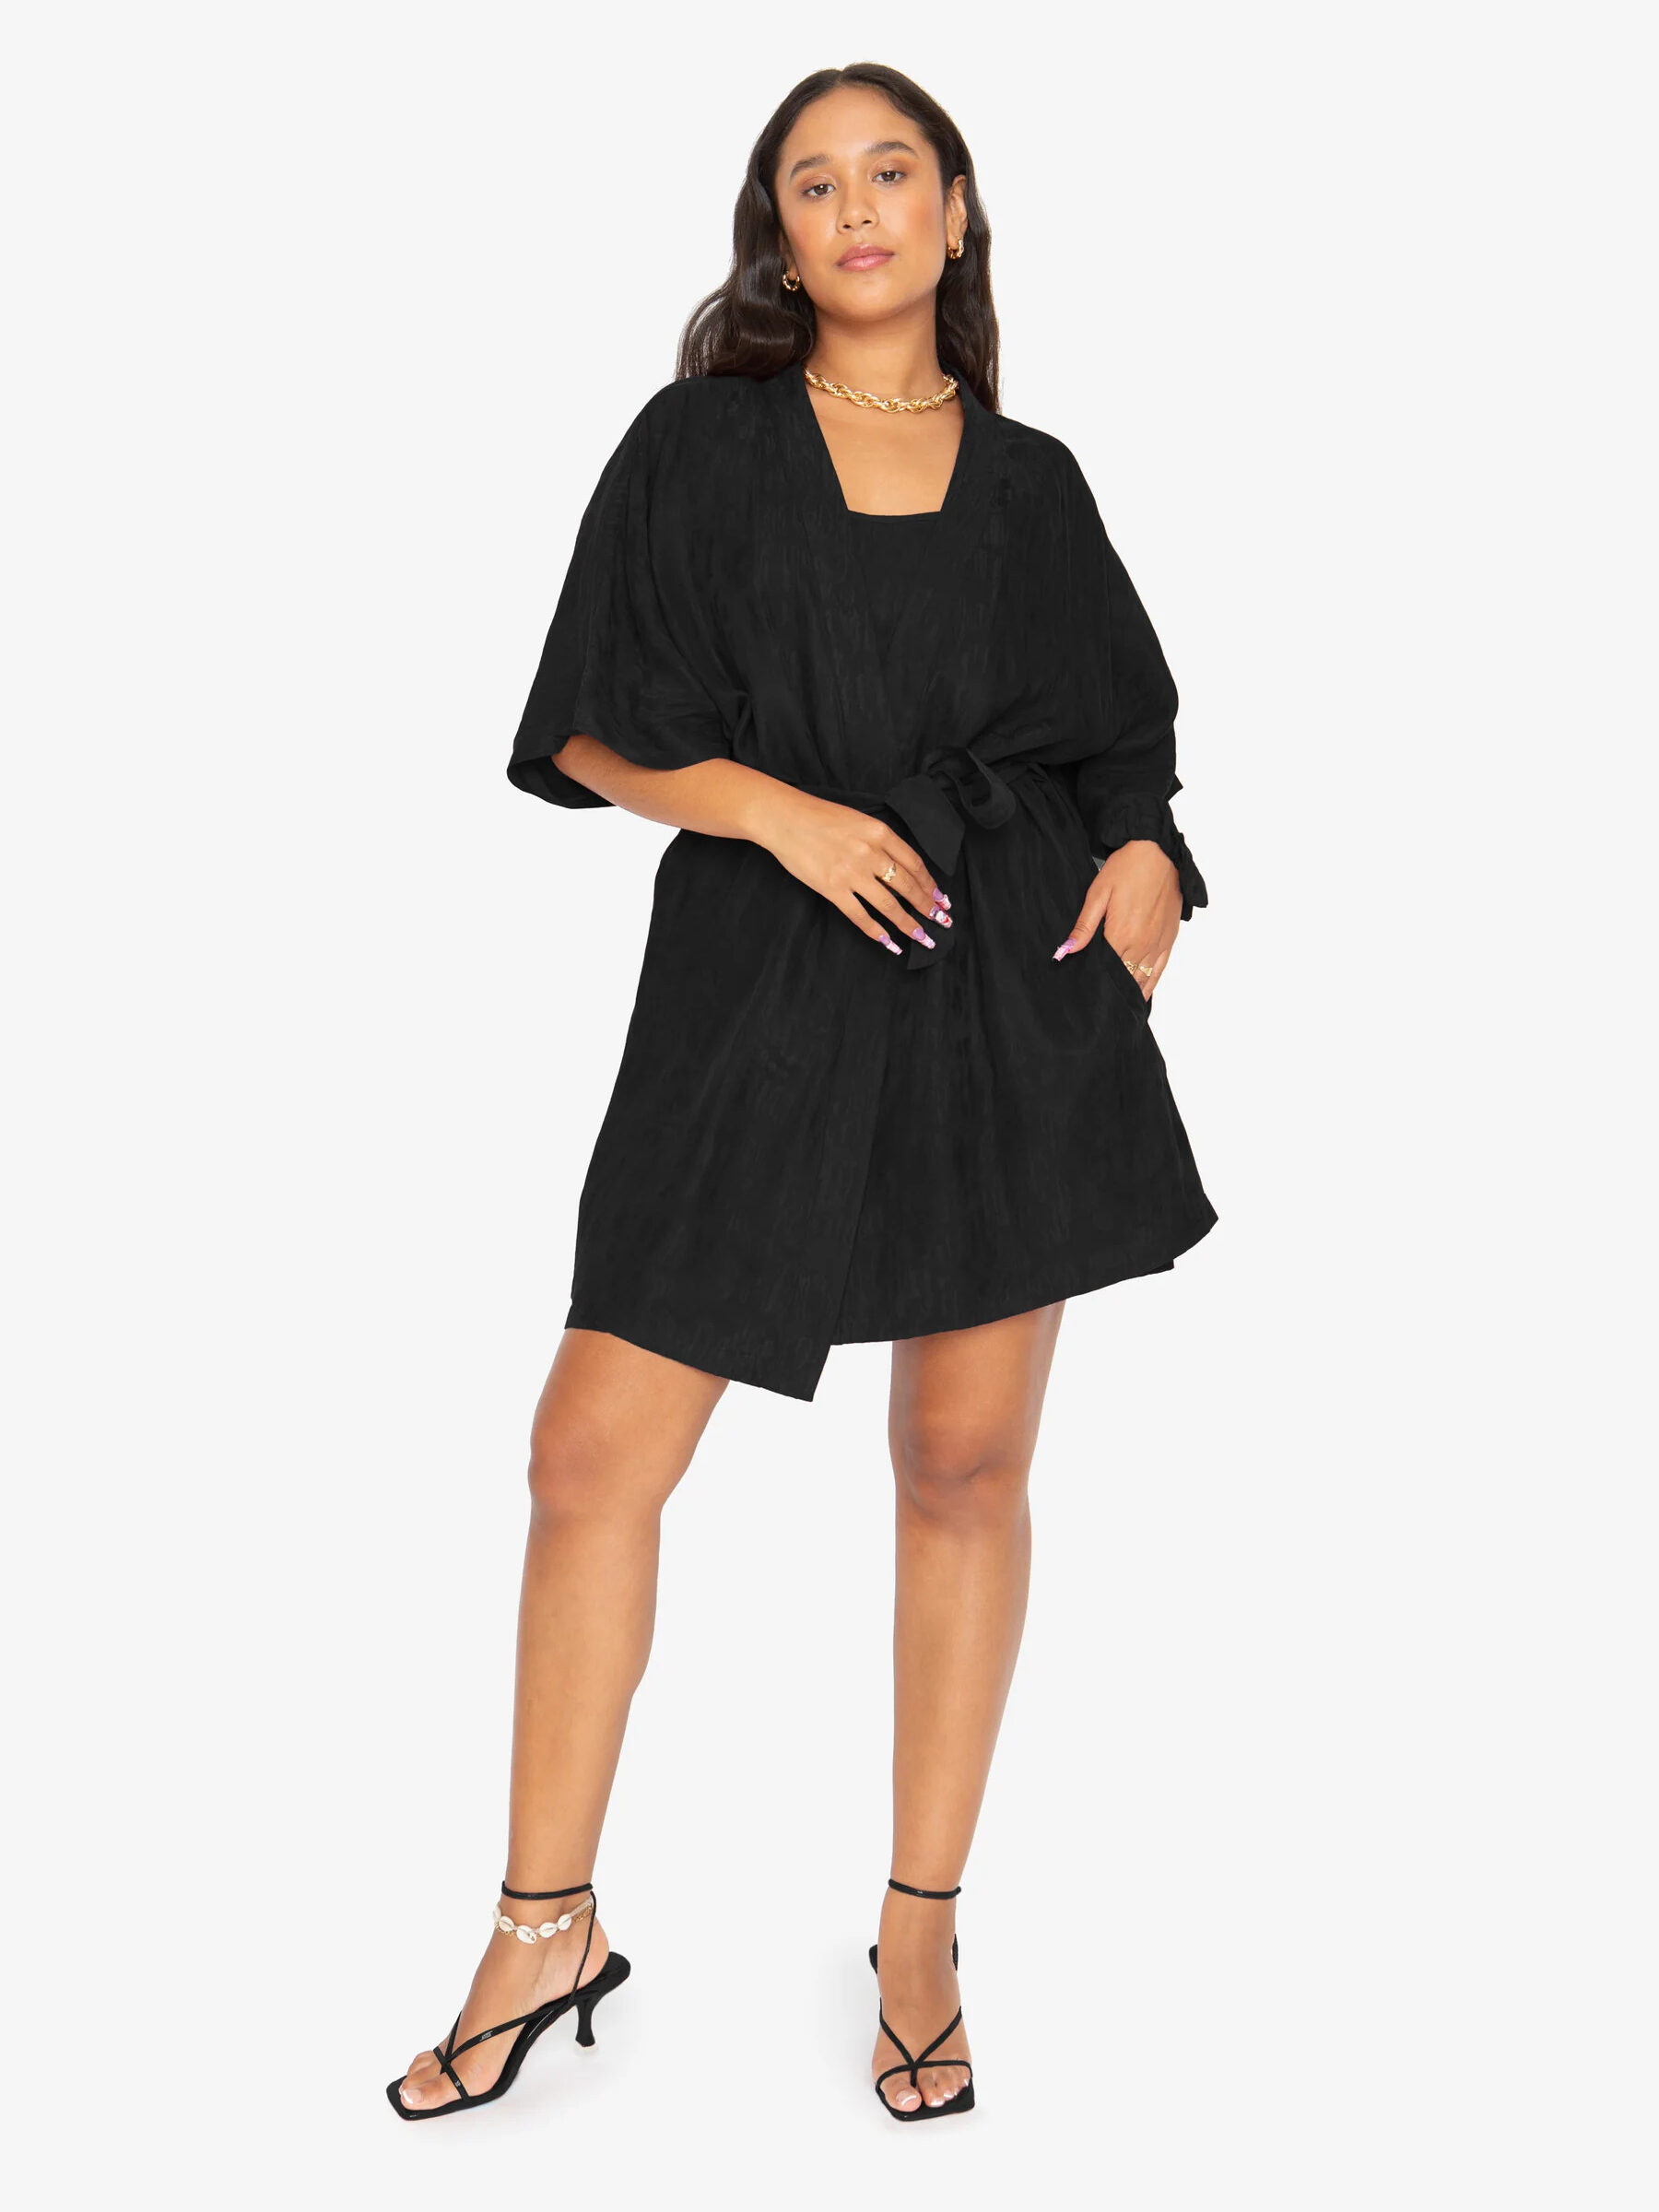 A model wearing Idle's robe in black.